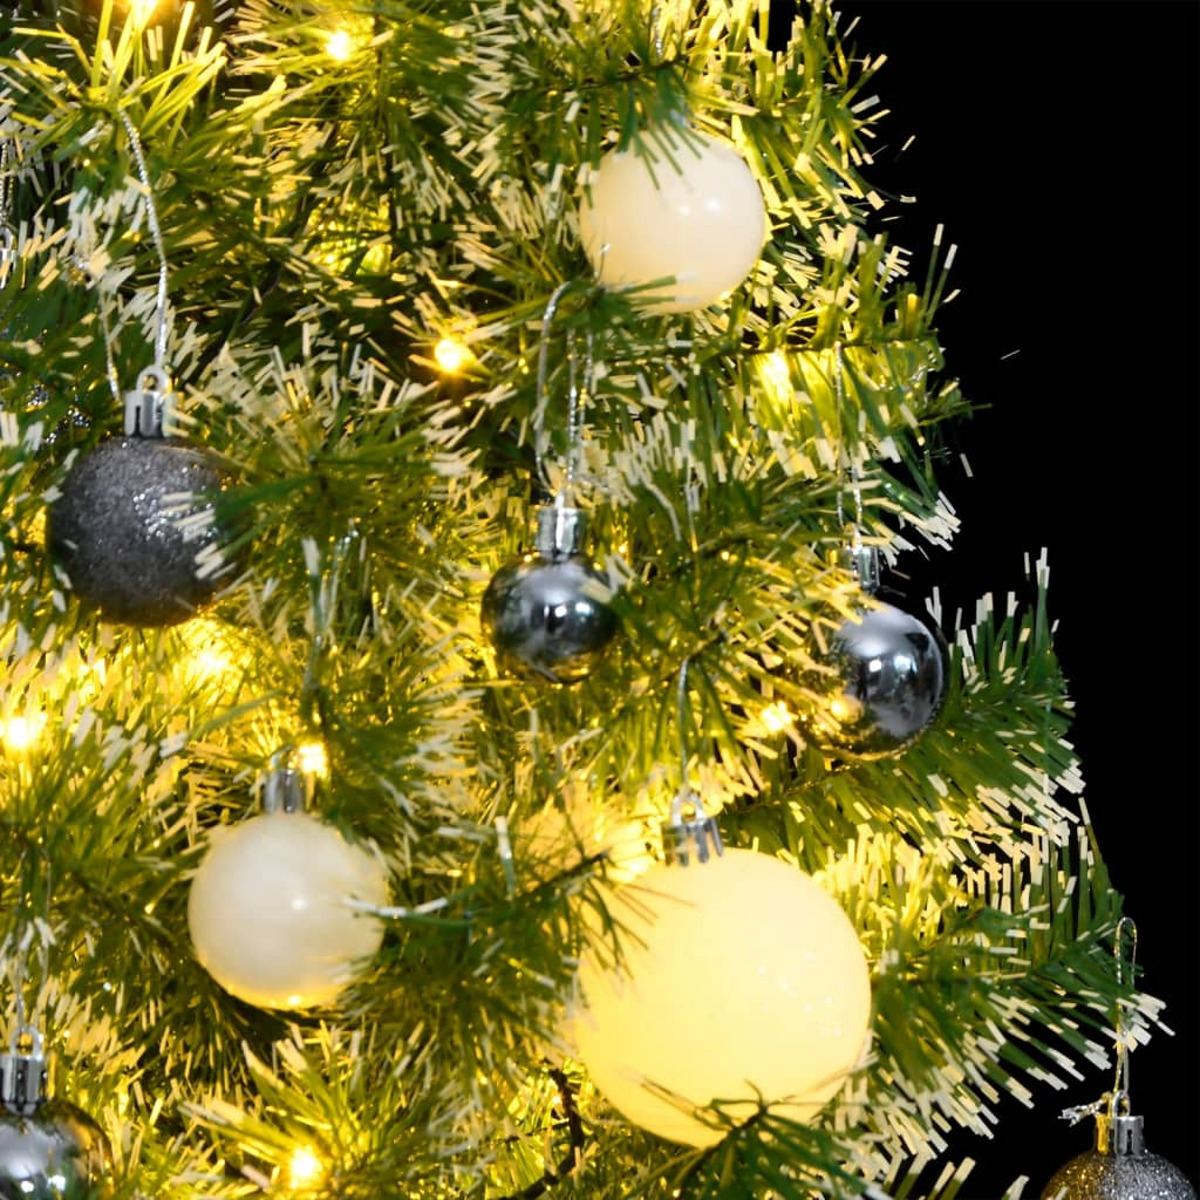 VIDAXL Weihnachtsbaum 3210100